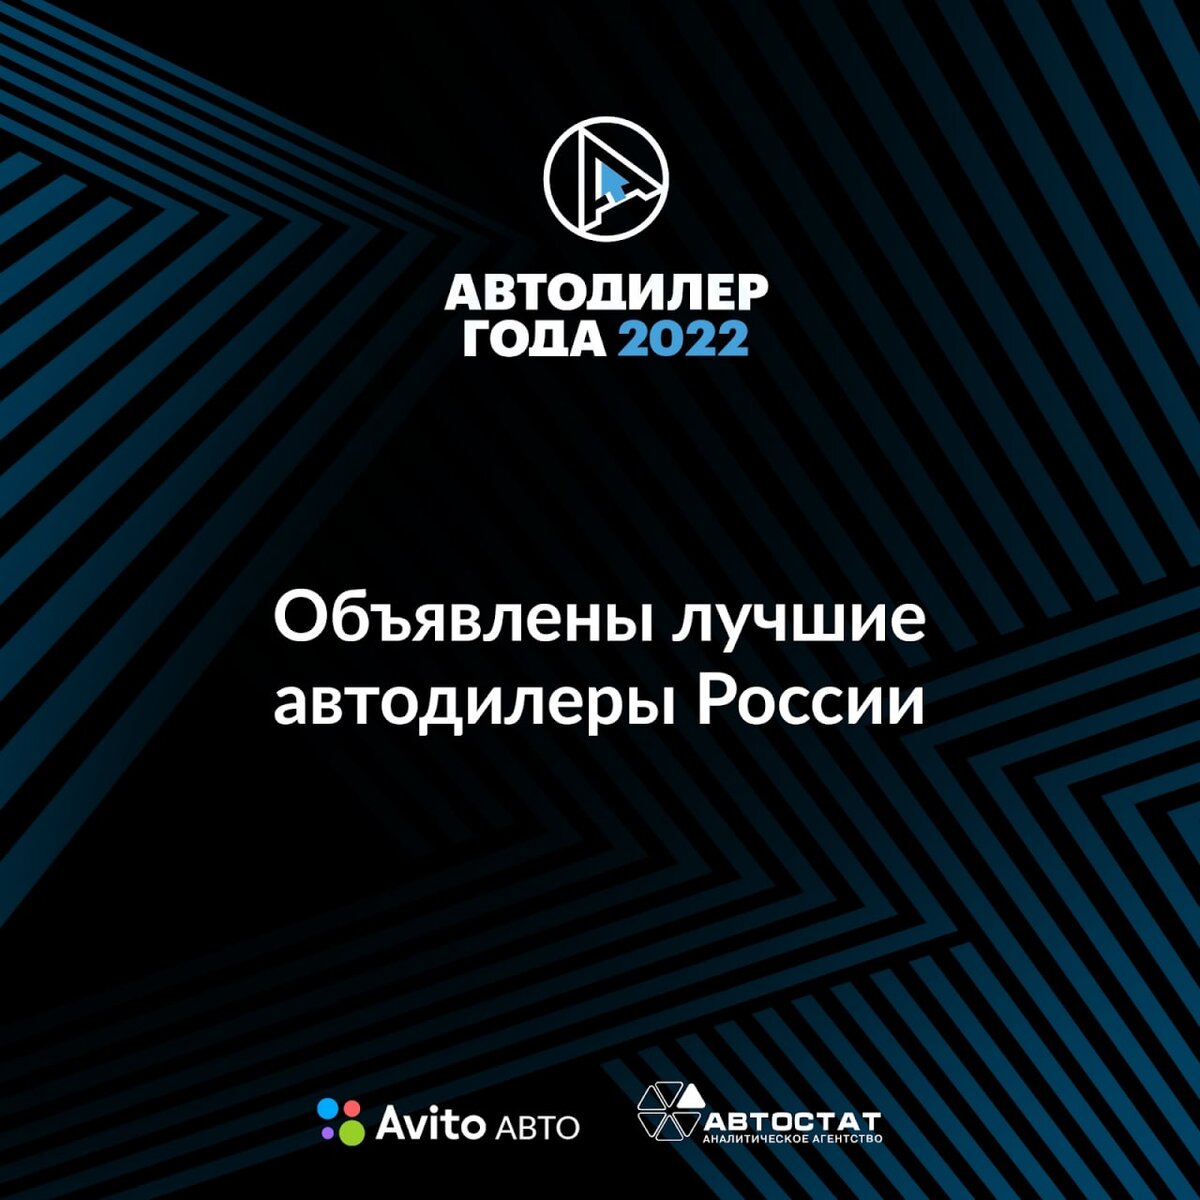 В мае на премии «Автодилер года» были названы лучшие автодилеры России 🏆  Авито Авто и Автостат вручили награды дилерским центрам, которые показали самый высокий уровень сервиса, маркетинга и продаж